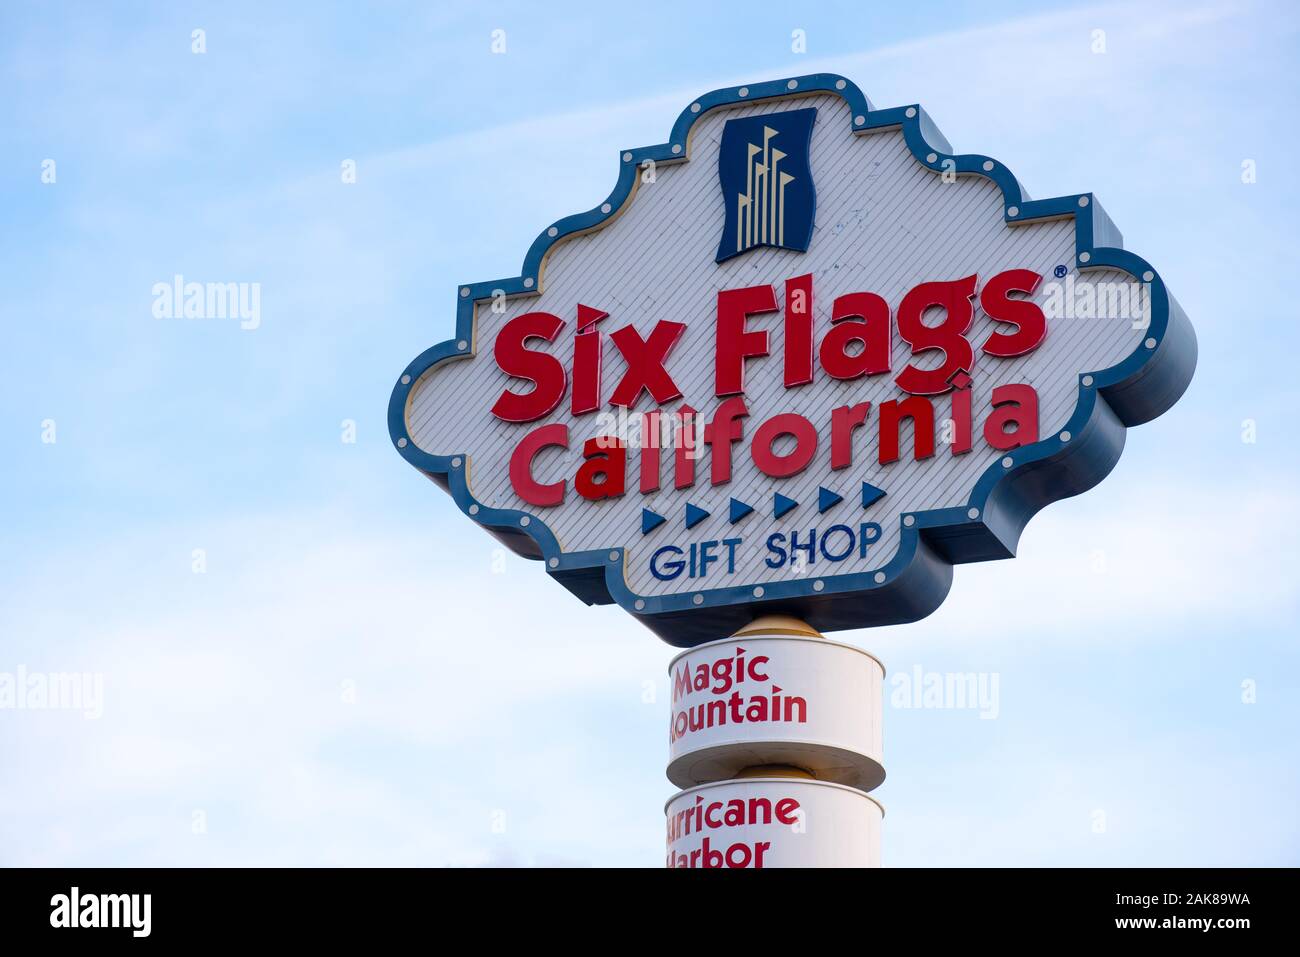 01/01/2020 - Six Flags California parc d'attractions panneau à Valencia, CA, USA Banque D'Images